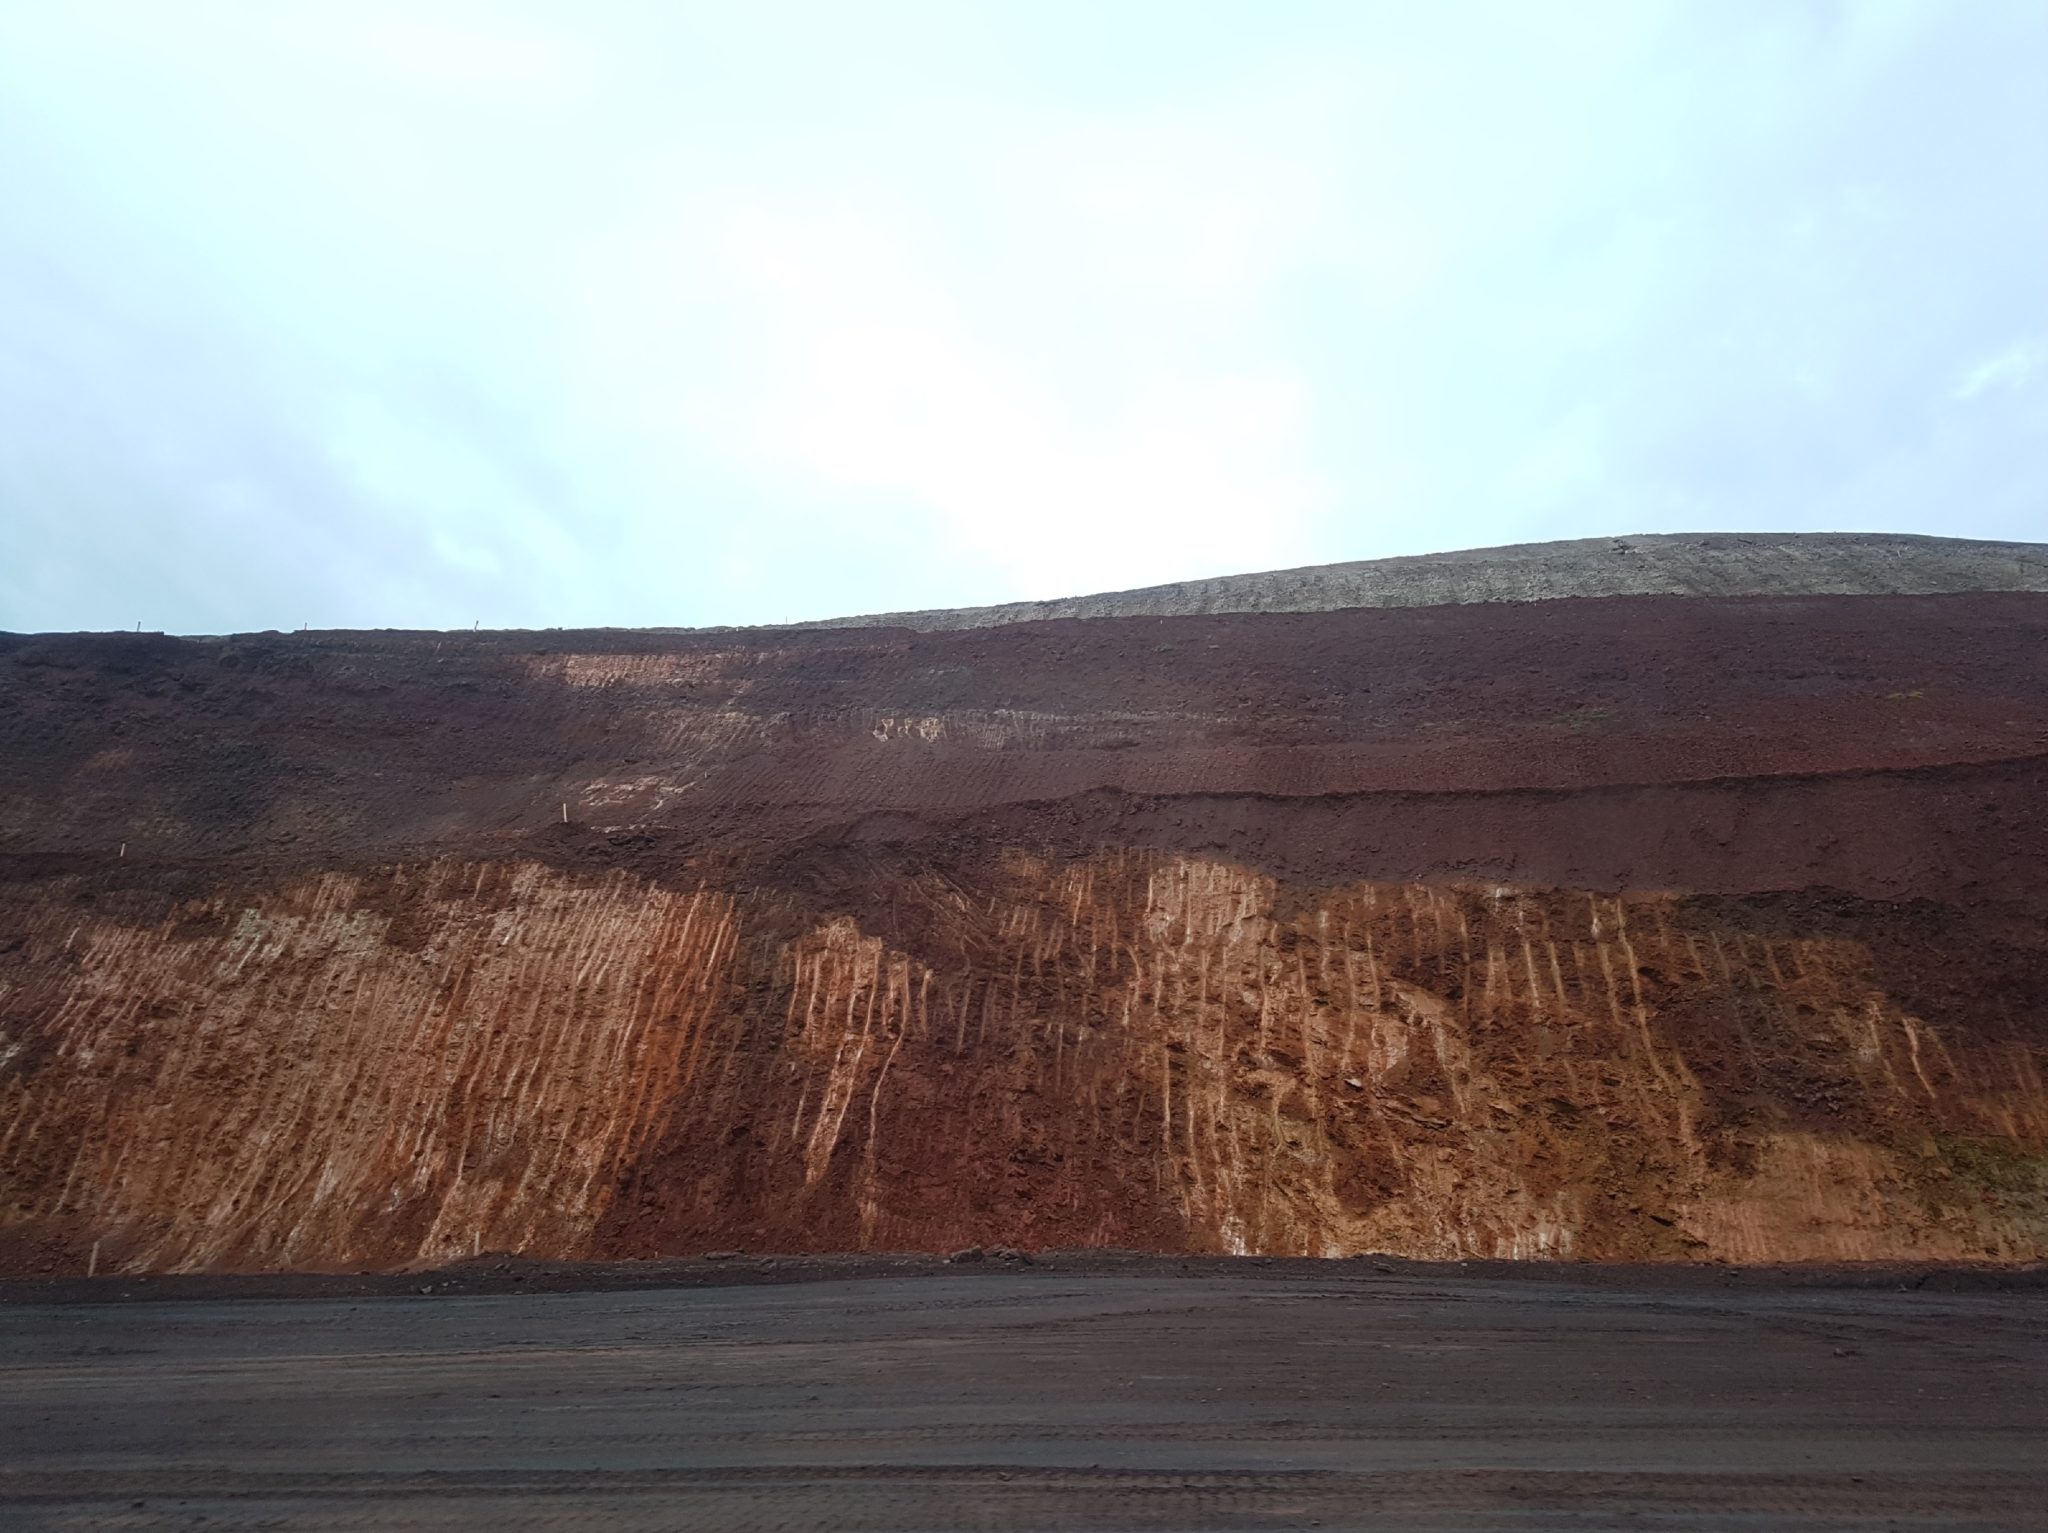 <p>La zona deforestación cerca de la carretera de acceso a la mina S11D, en Canaán dos Carajás, Brasil, 2 de febrero, 2017 (imagen: Milton Leal para Diálogo Chino/ChinaFile)</p>